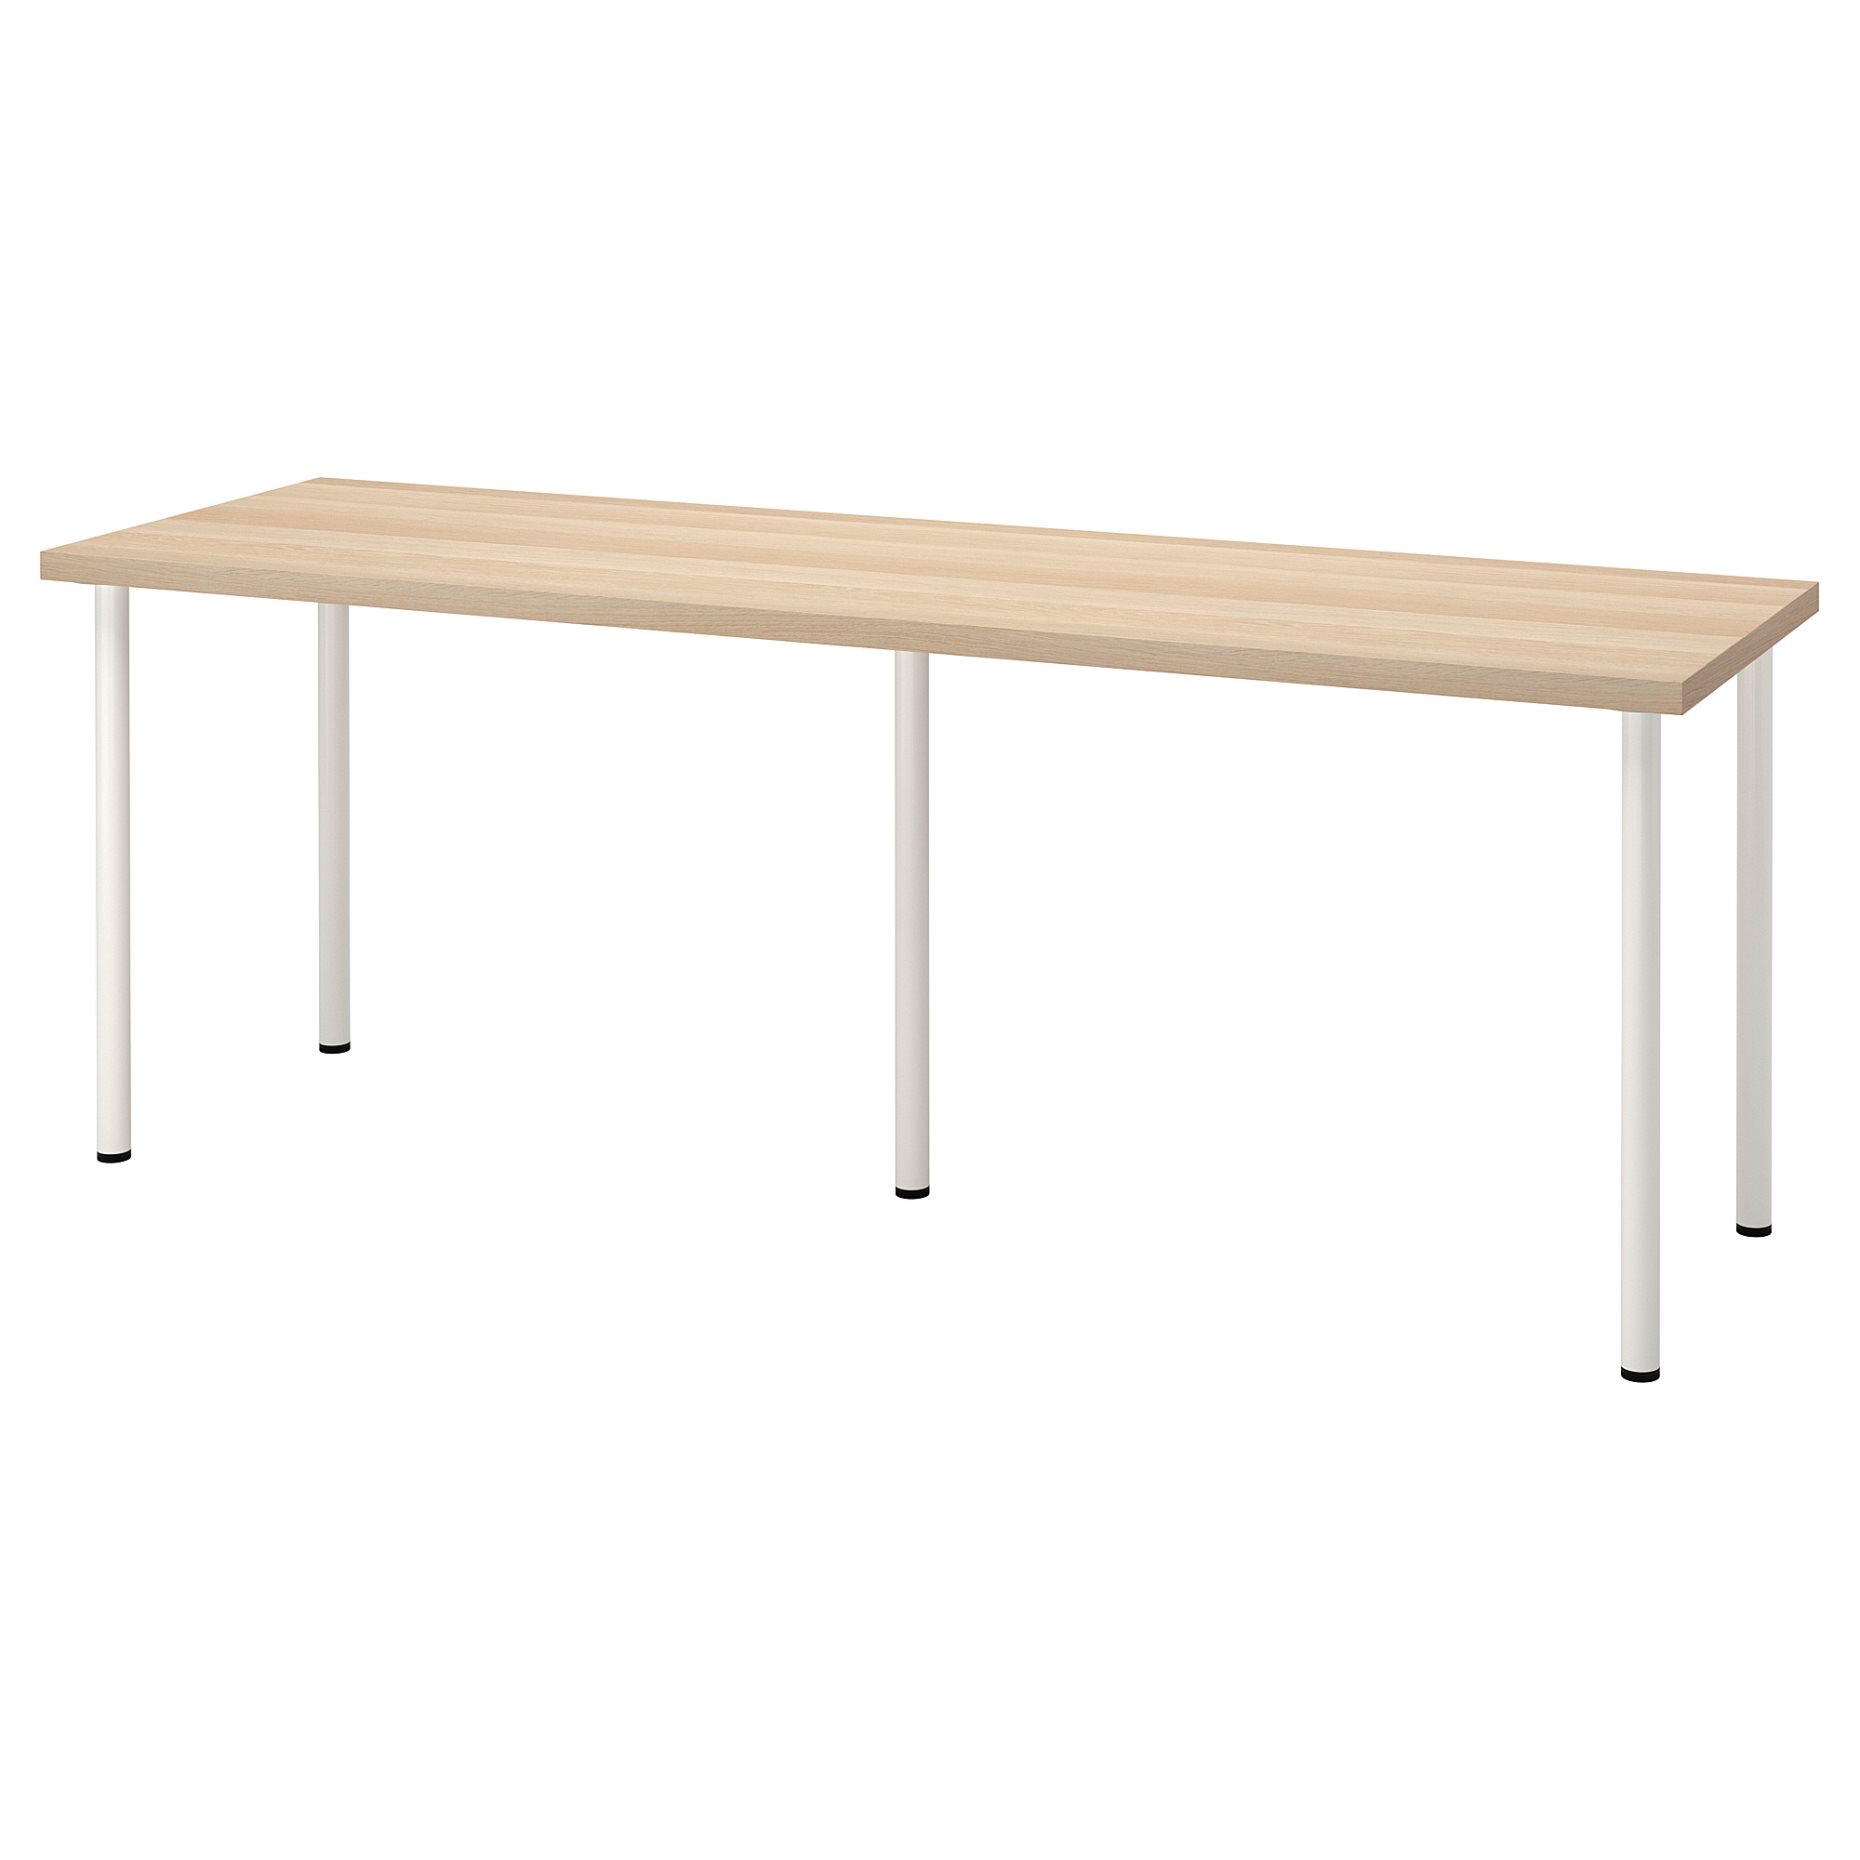 LAGKAPTEN/ADILS, desk, 200x60 cm, 094.176.26